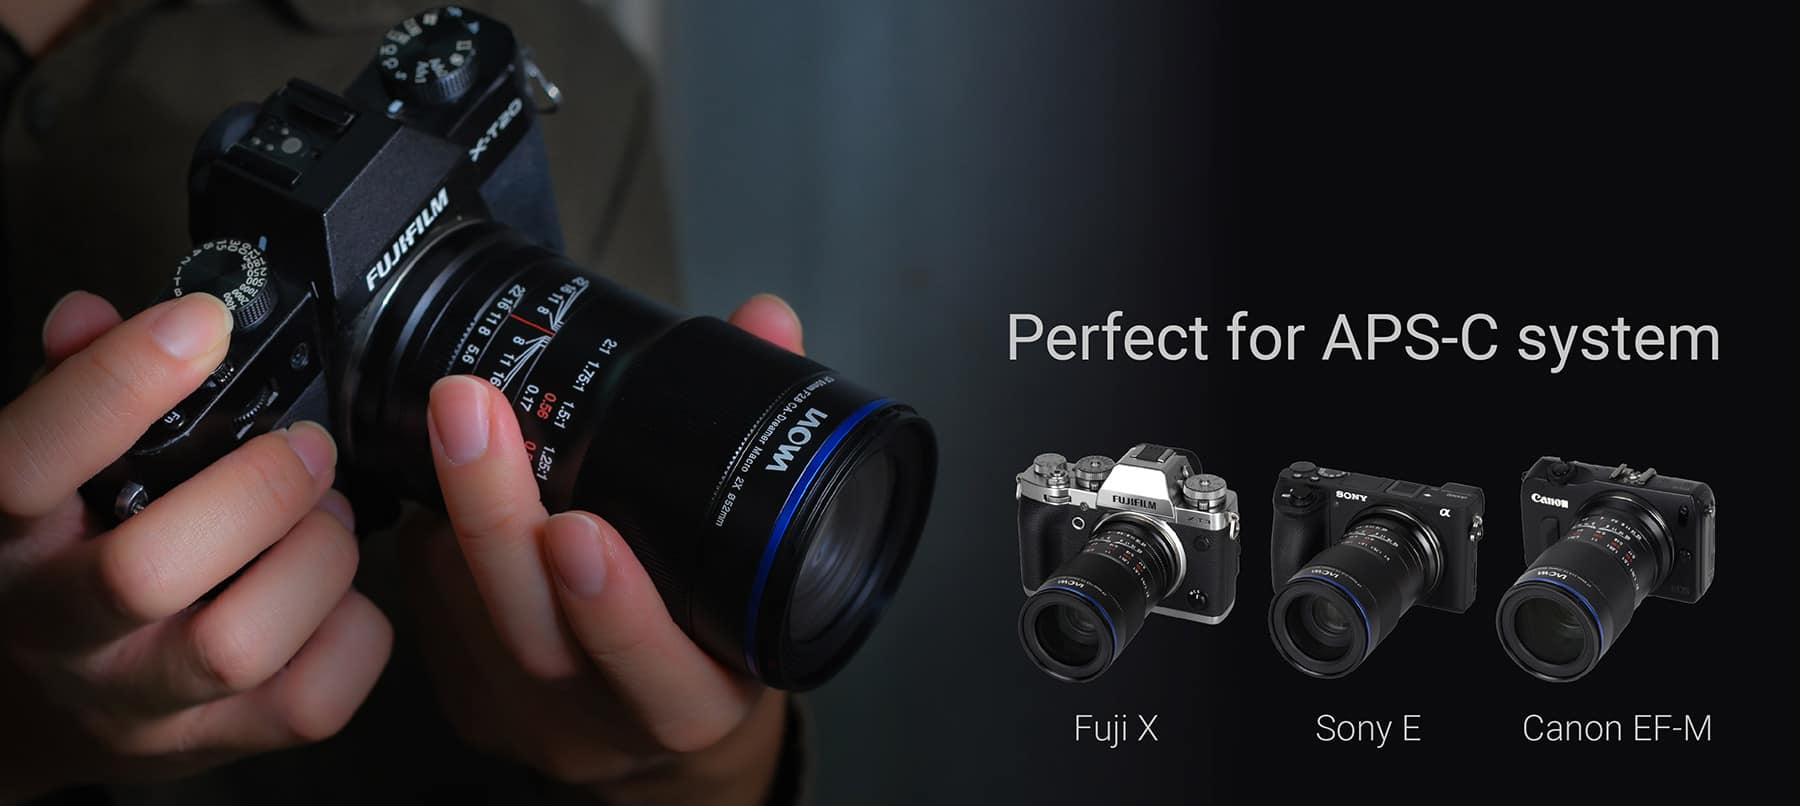 Venus Optics ra mắt ống kính Laowa 11mm F4.5 cho Canon RF và Laowa 65mm F2.8 2X Macro cho Nikon Z